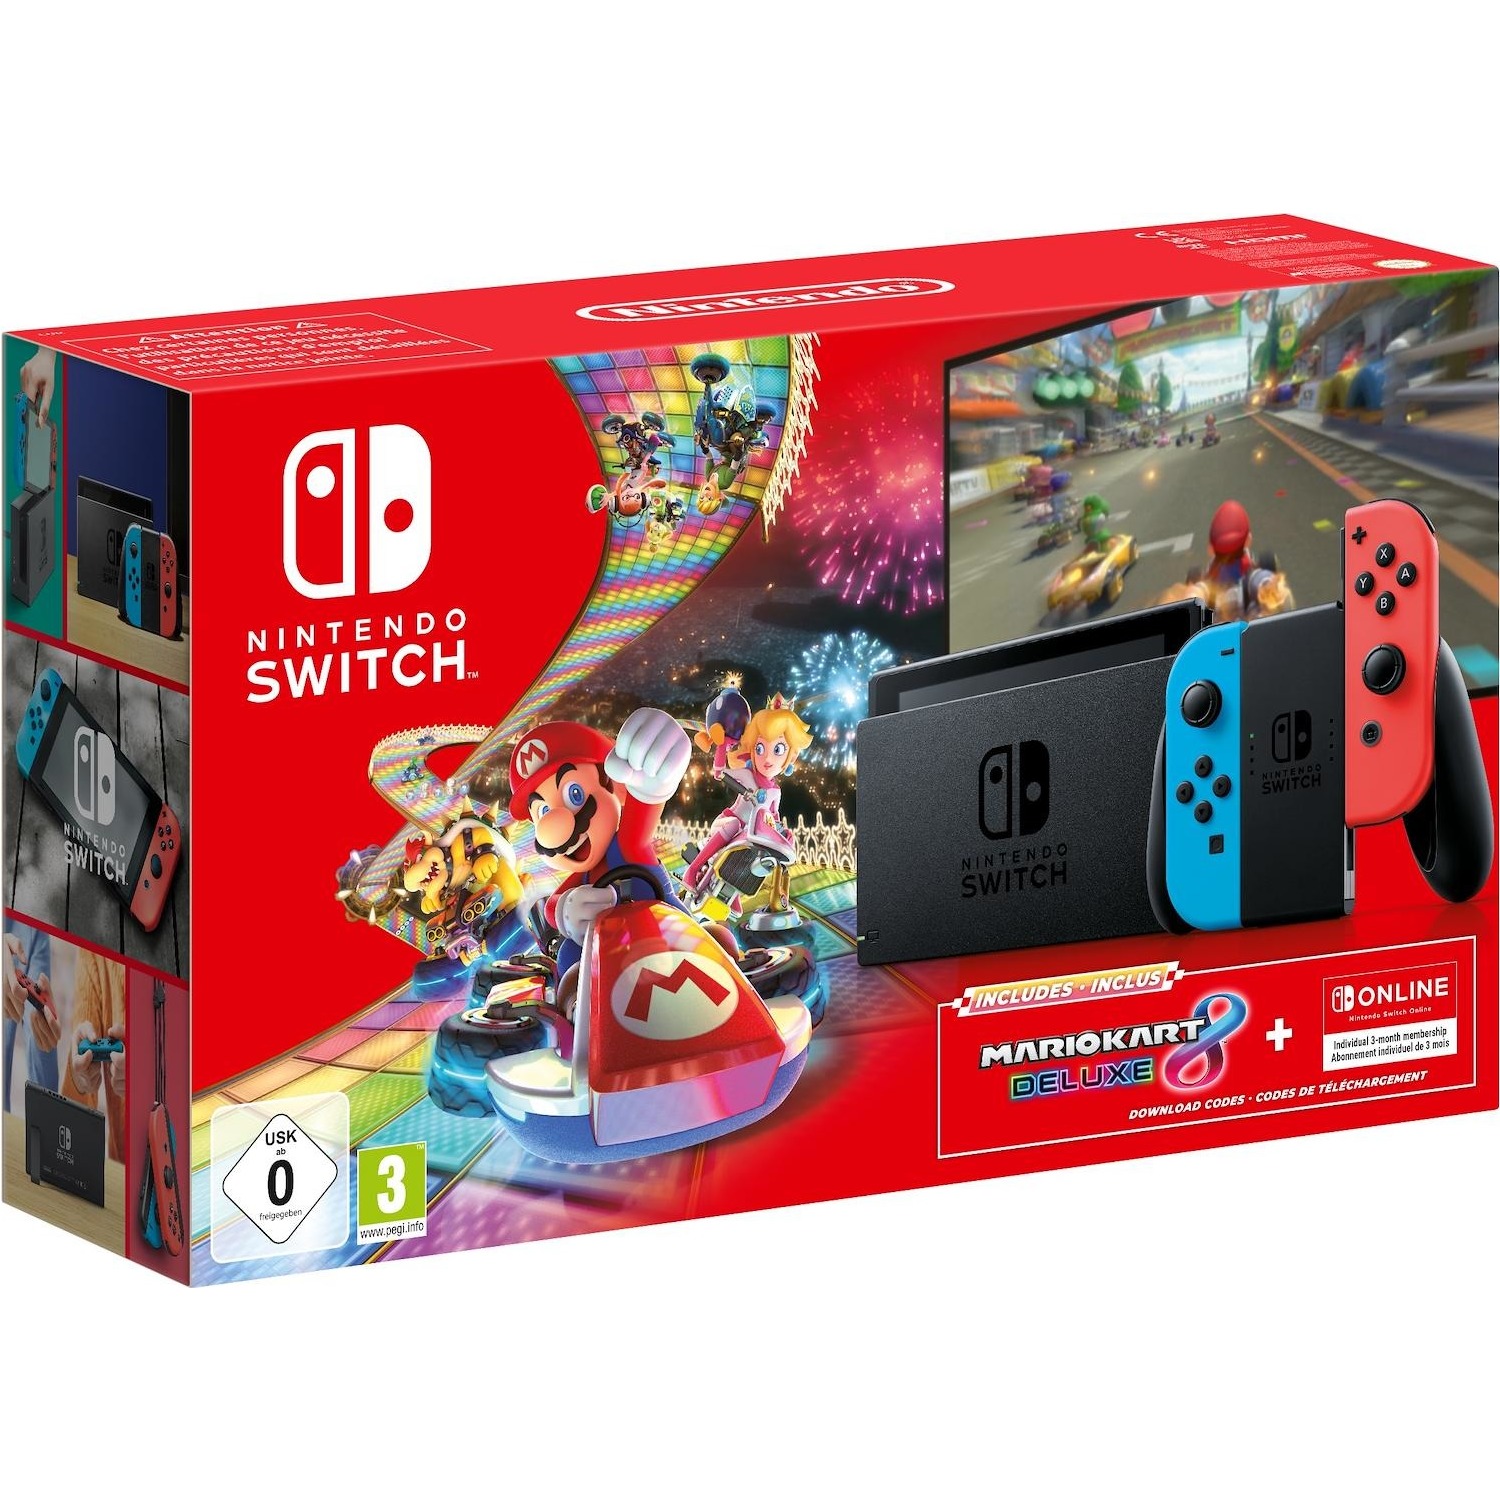 Immagine per Console Nintendo Switch + Gioco Switch Mario Kart 8 Deluxe (Download Code) + Online 3 mesi da DIMOStore